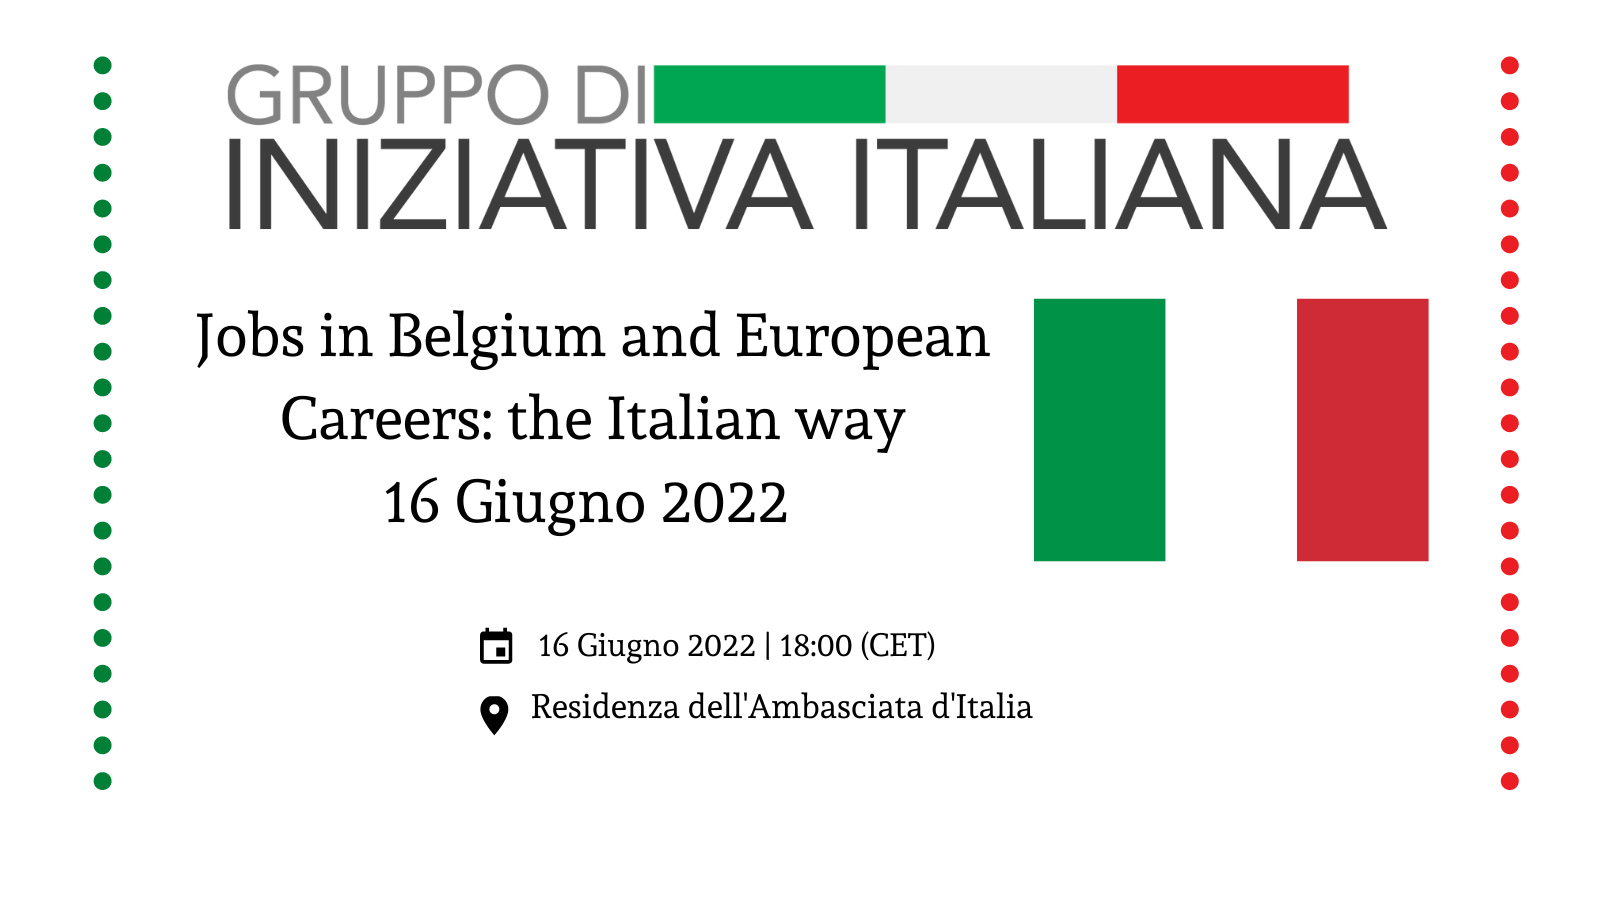 Jobs in Belgium and European Careers: the Italian way. Reclutamento e sviluppo del talento al servizio del sistema Italia